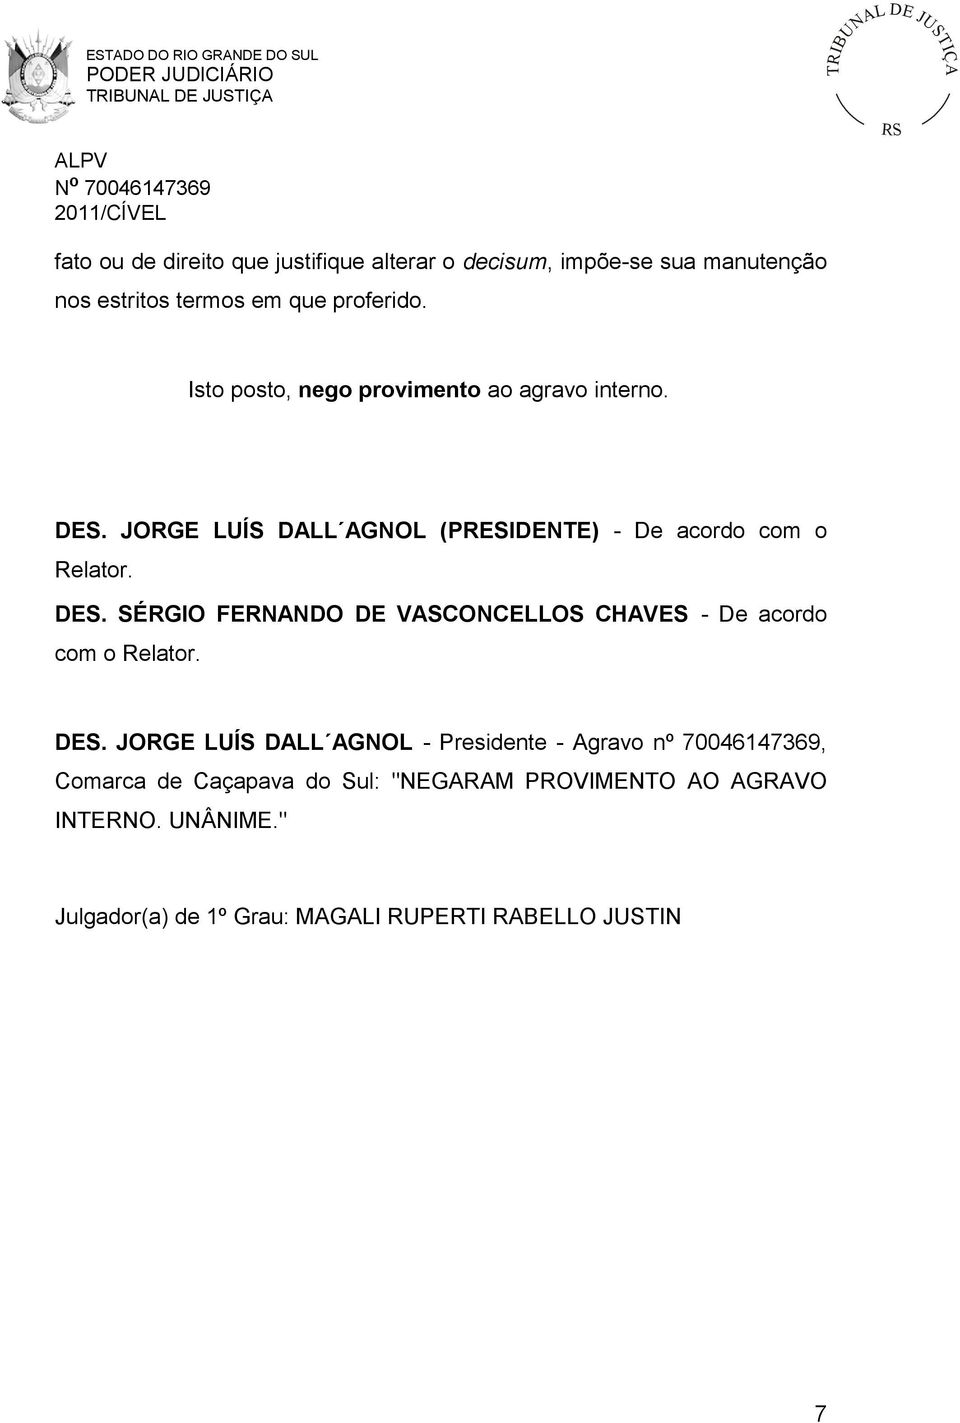 DES. JORGE LUÍS DALL AGNOL - Presidente - Agravo nº 70046147369, Comarca de Caçapava do Sul: "NEGARAM PROVIMENTO AO AGRAVO